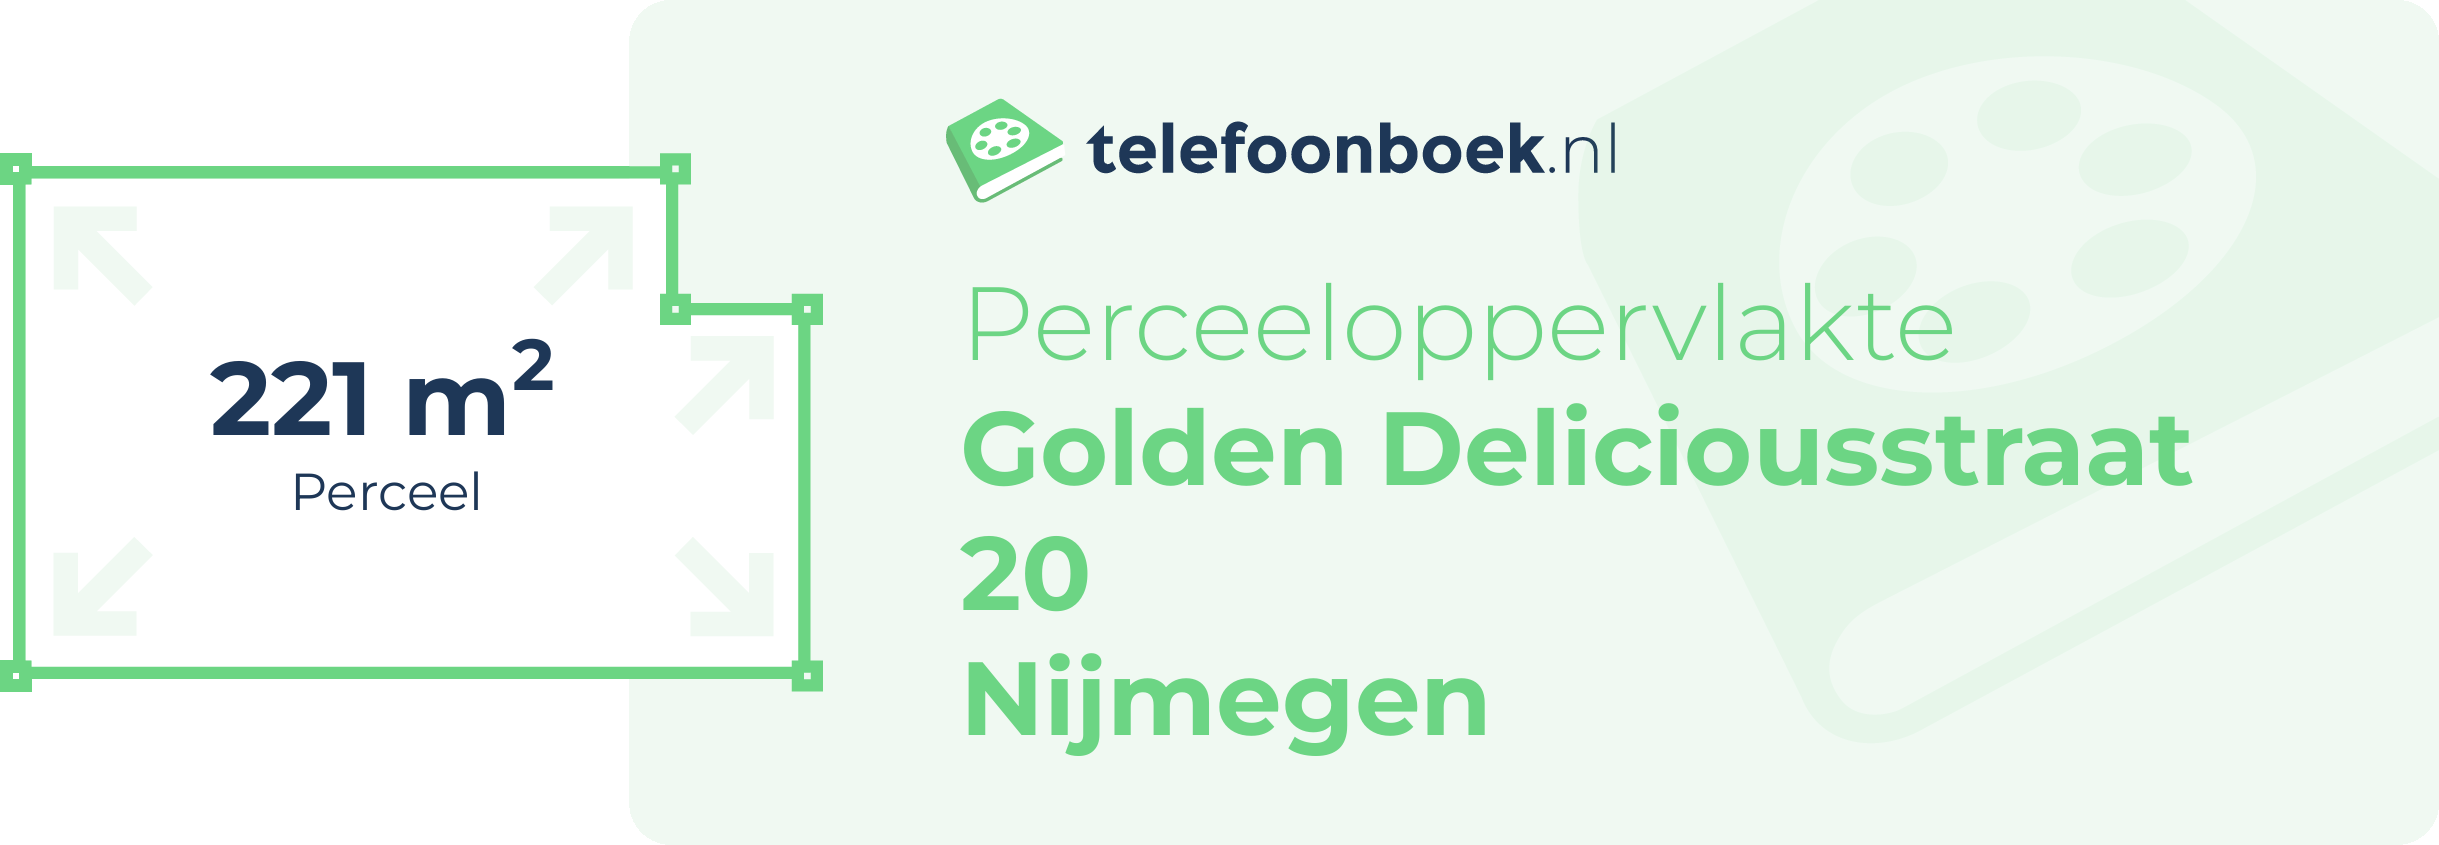 Perceeloppervlakte Golden Deliciousstraat 20 Nijmegen